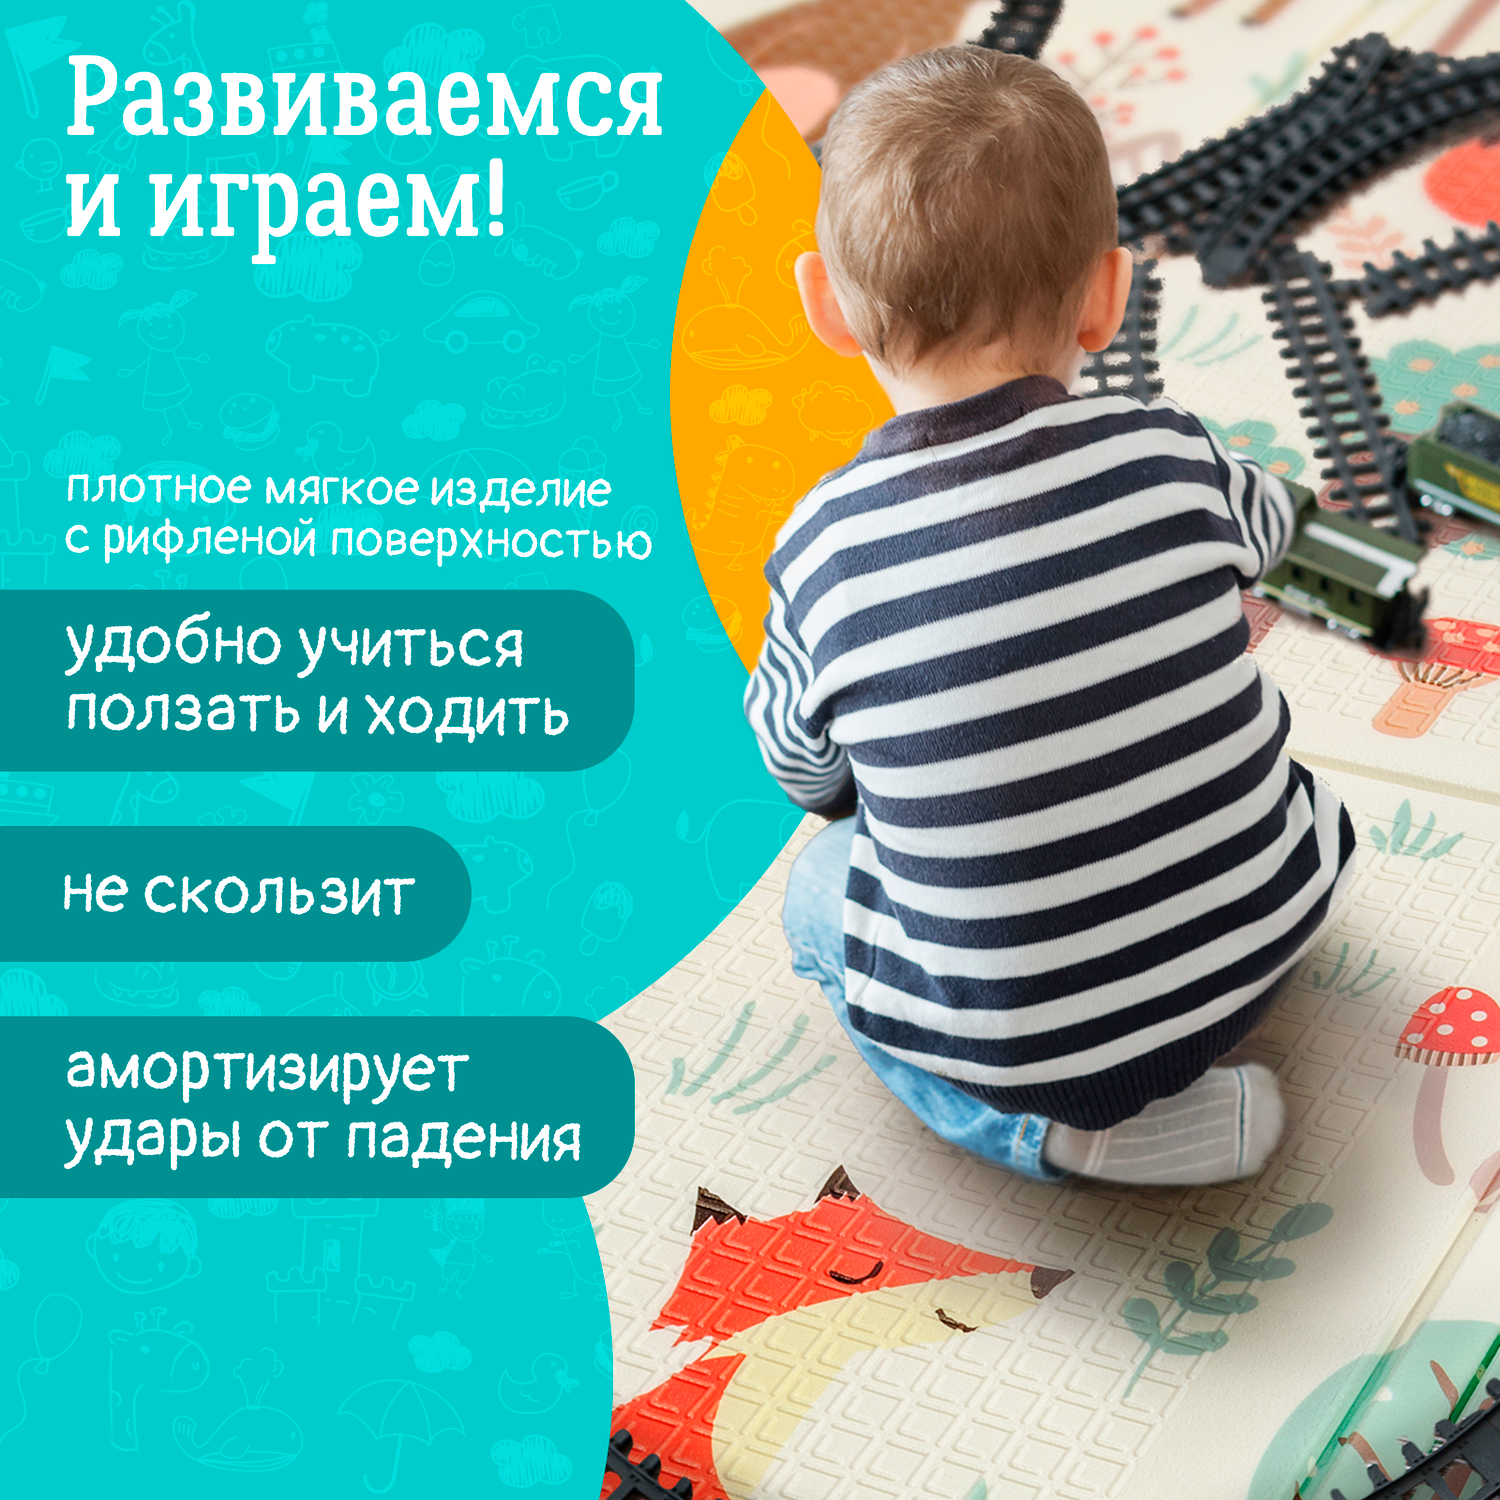 Детский коврик WellMat для ползания 150x200 Premium Русский алфавит/Городок складной развивающий - фото 6